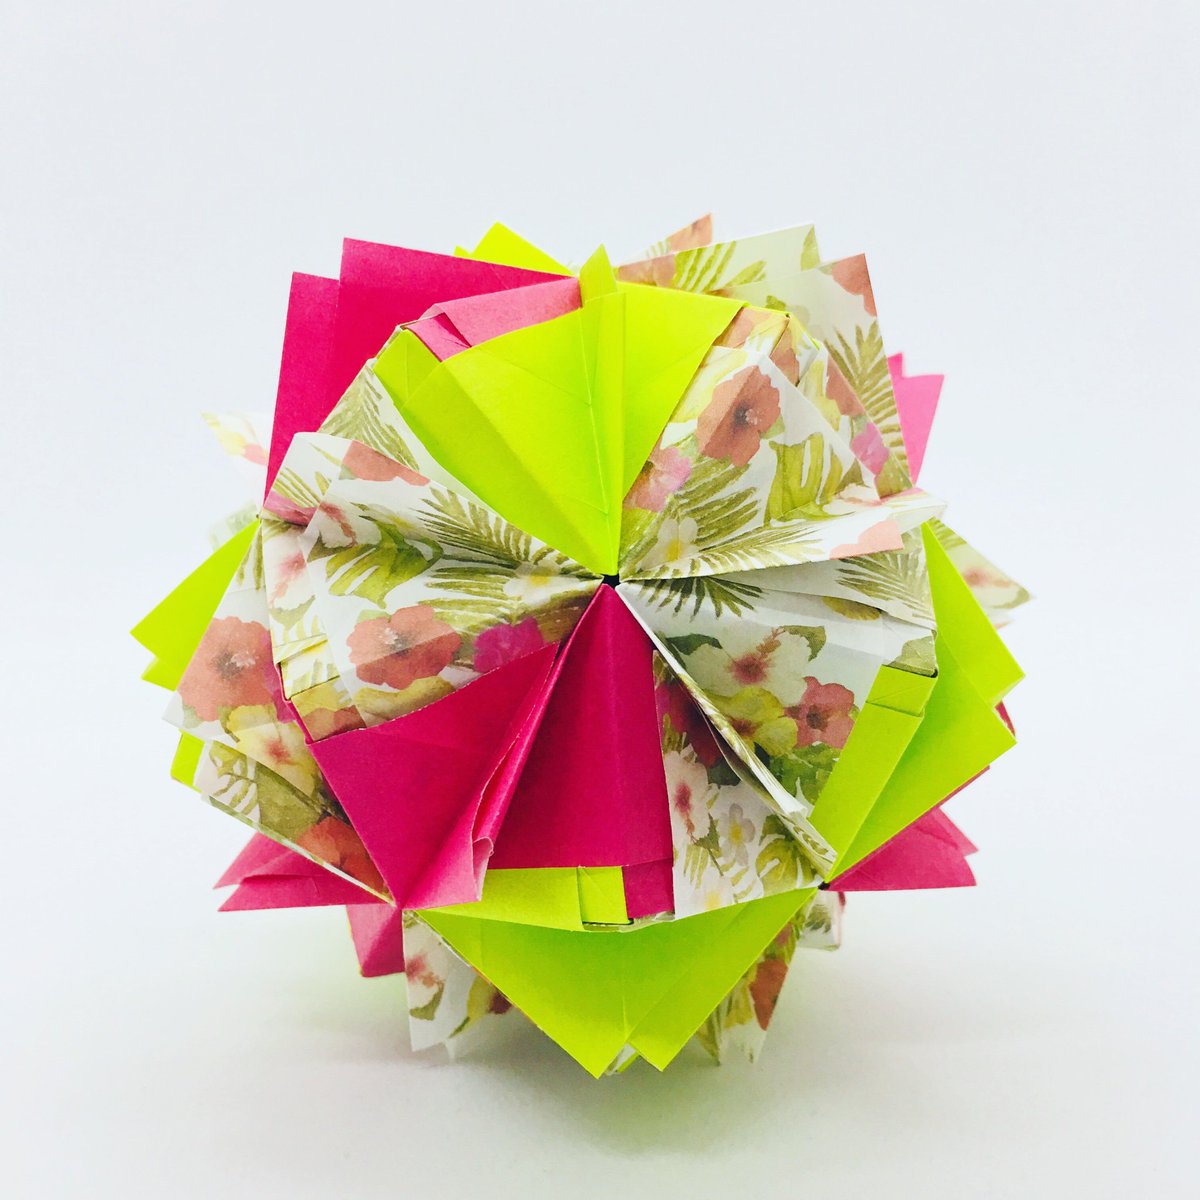 Kokone つがわみおさんの羽 折り紙 折り紙作品 おりがみ ユニット折り紙 Origami